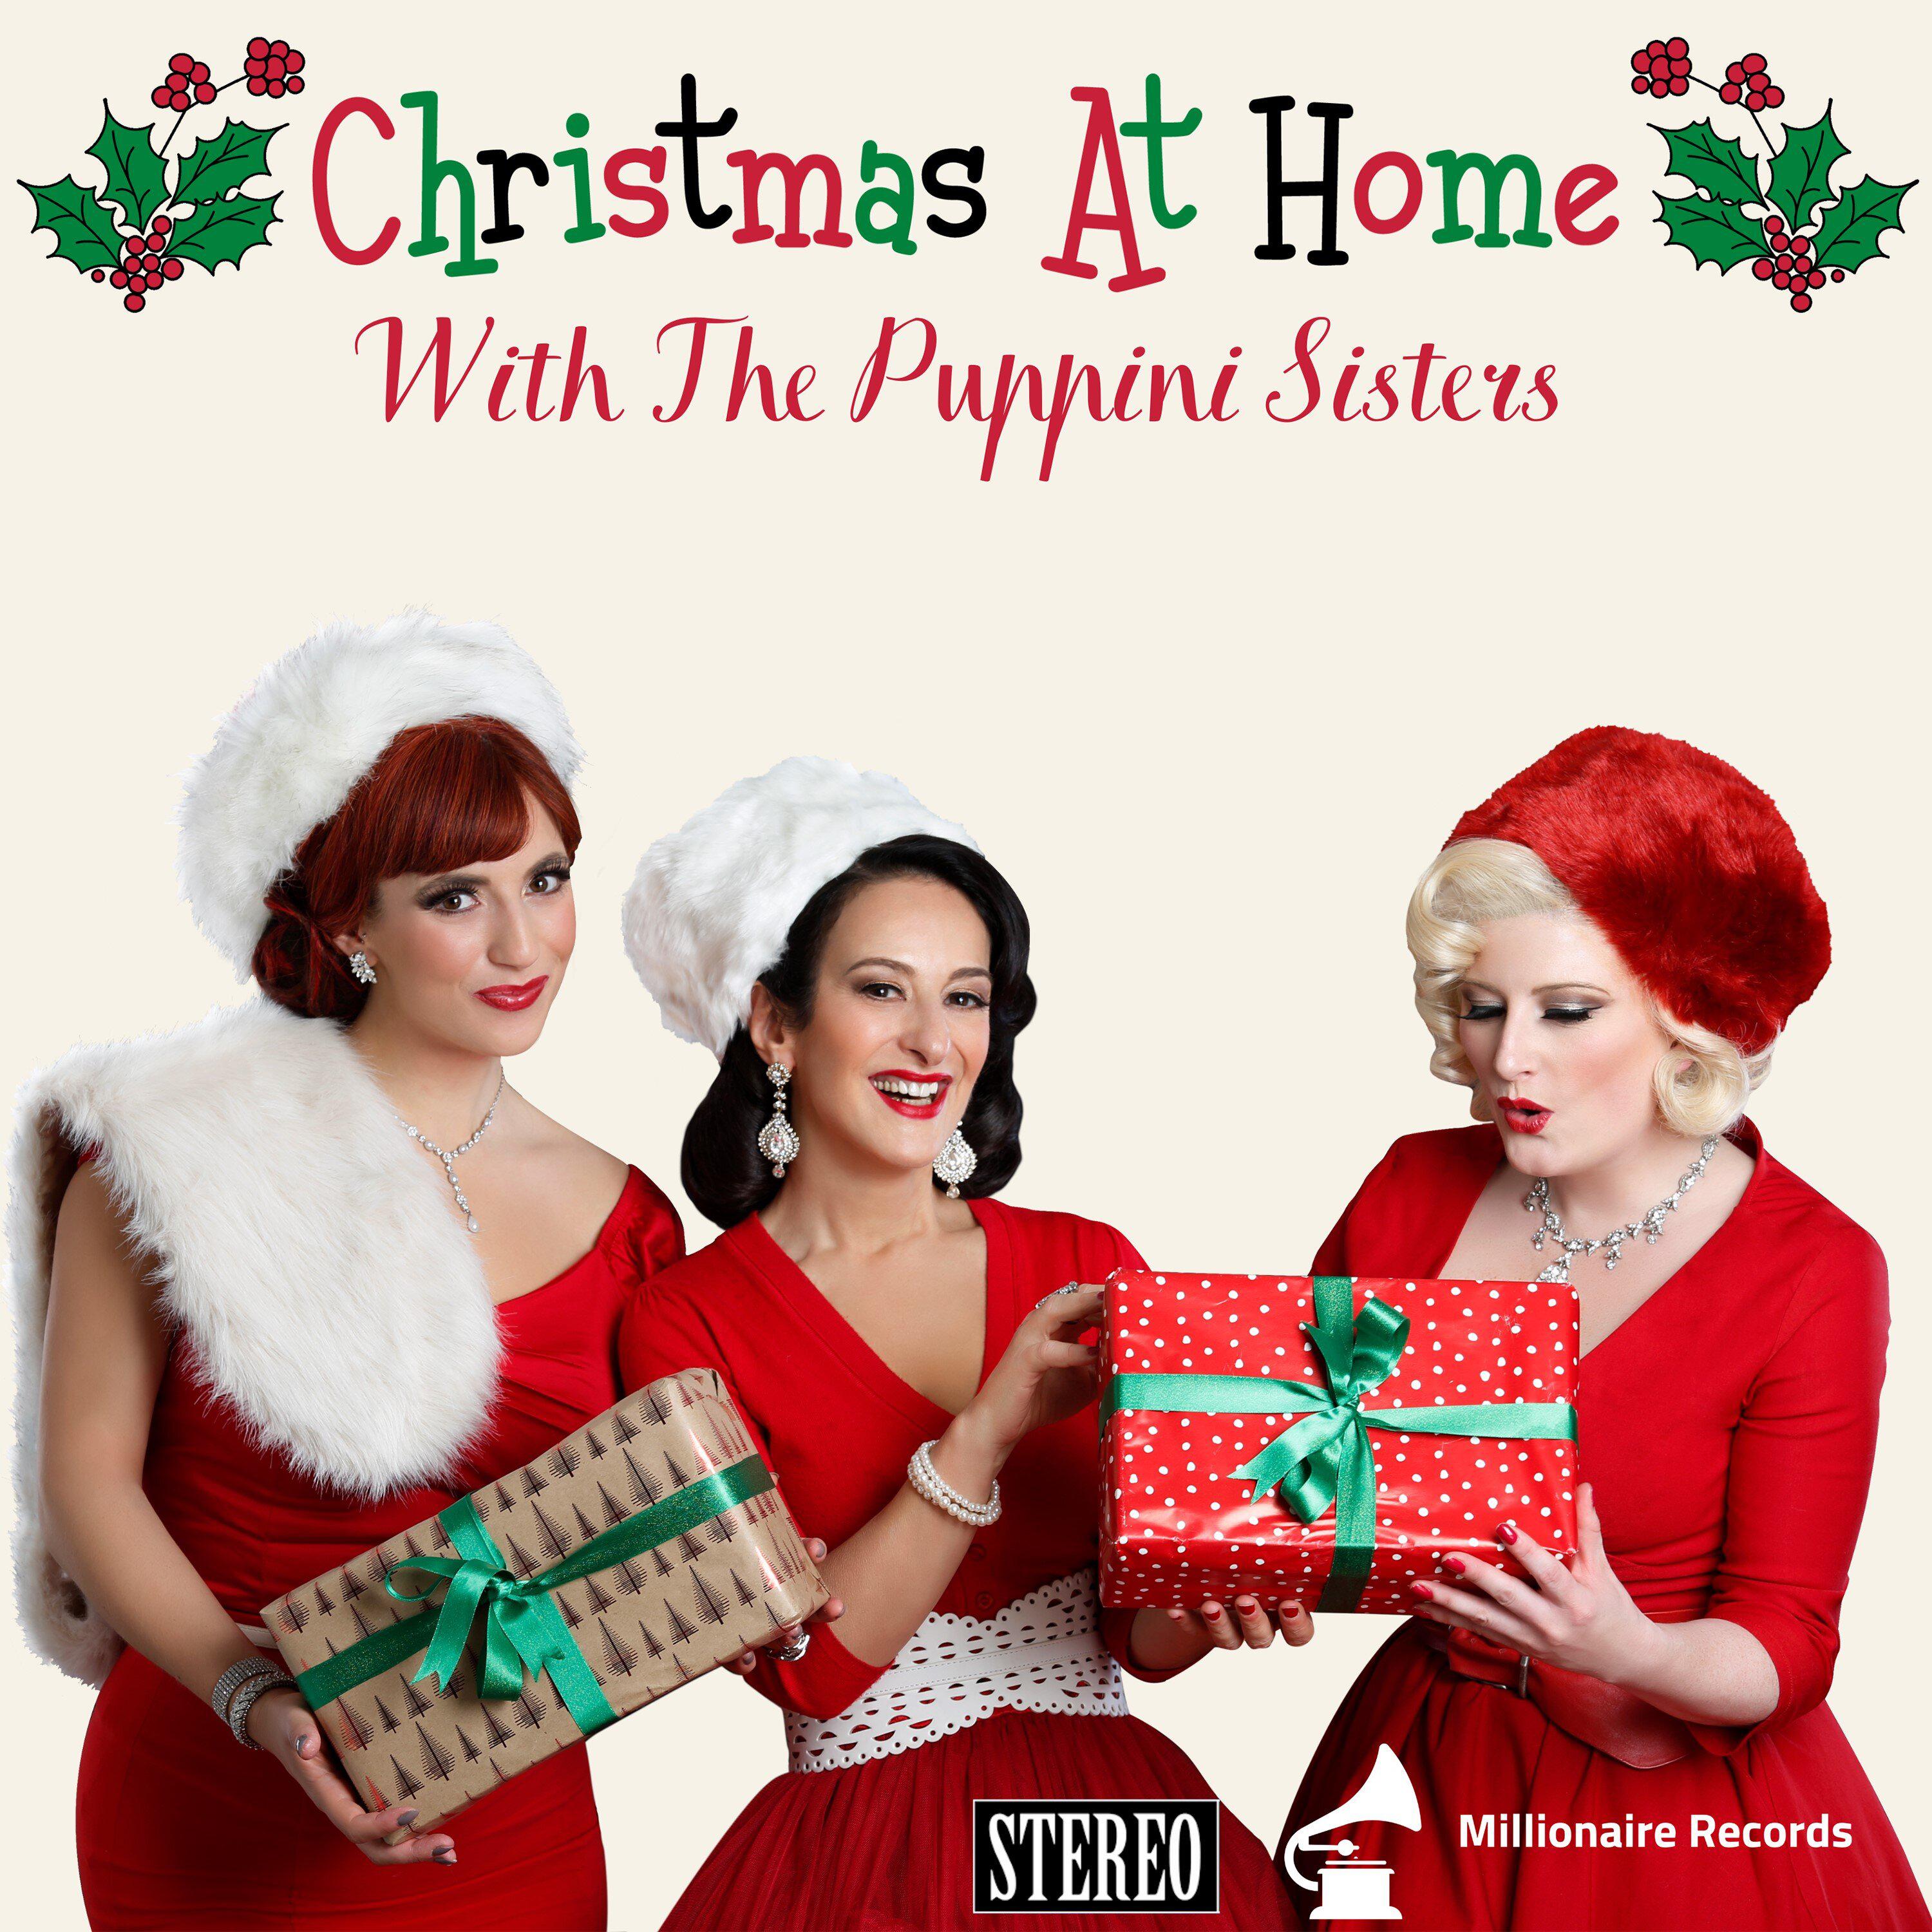 The Puppini Sisters - Mr Santa